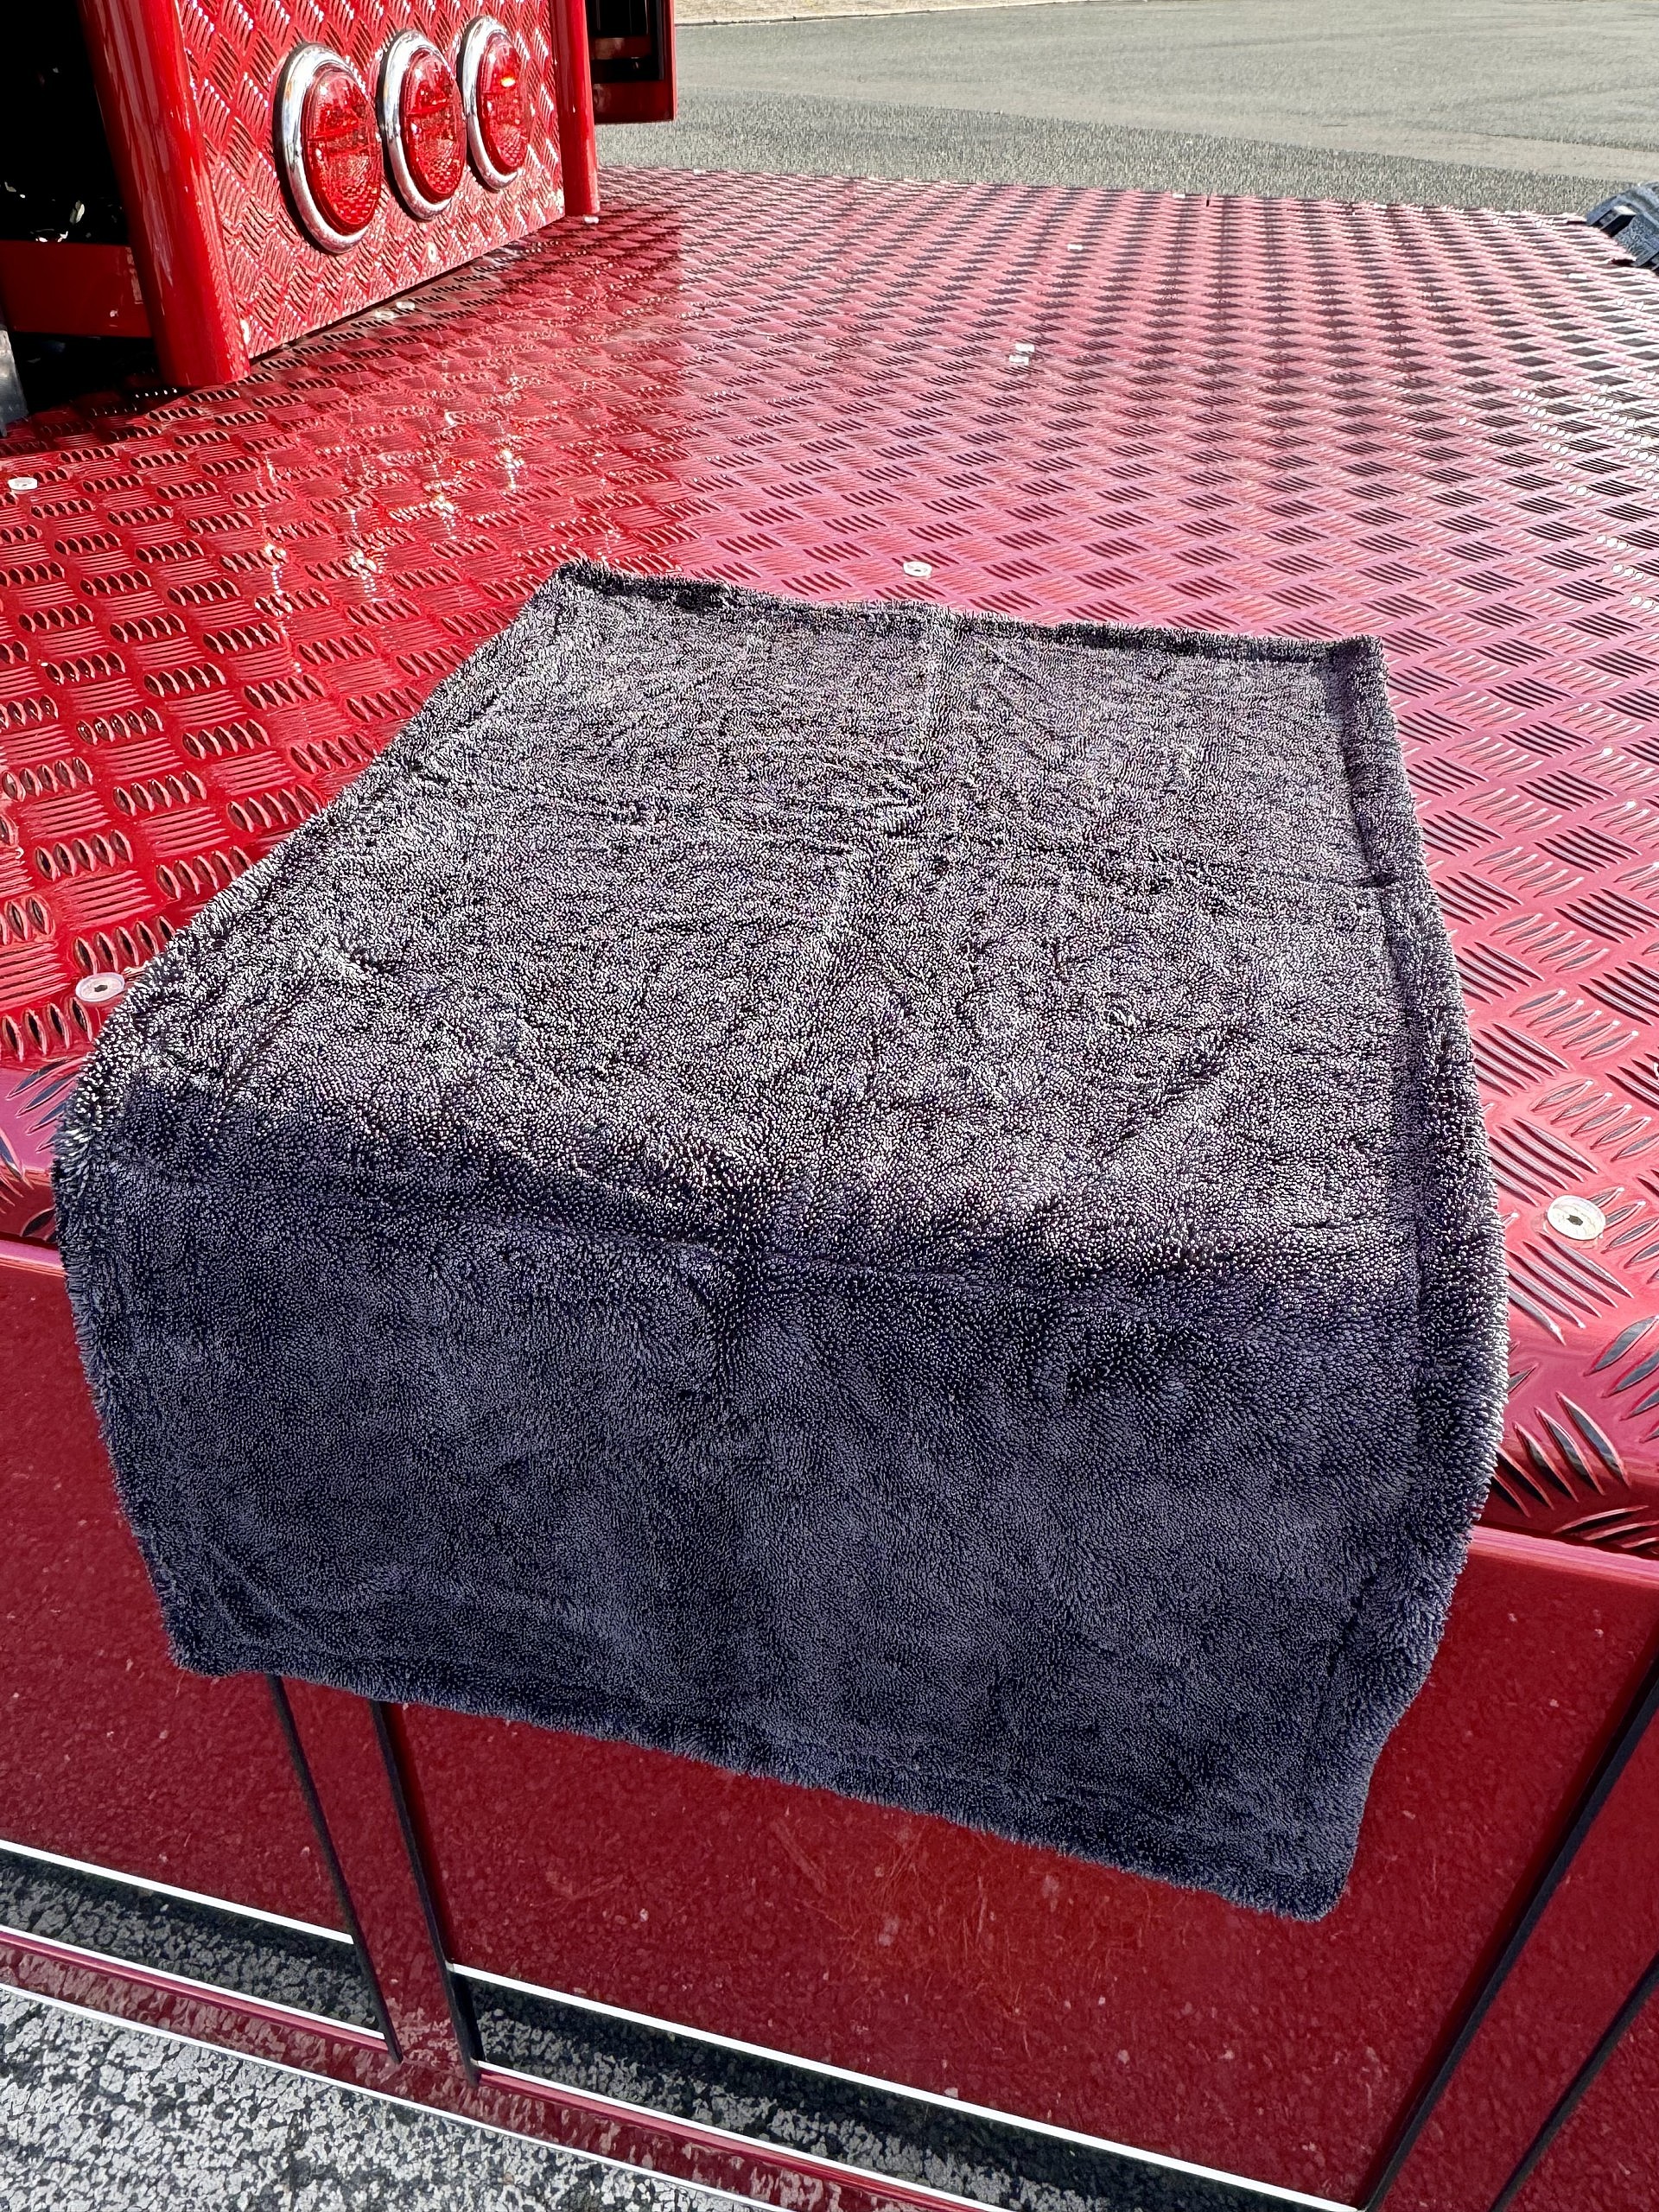 Heinrichs Trockentuch schwarz ausgepackt auf LKW-Abdeckung ausgebreitet